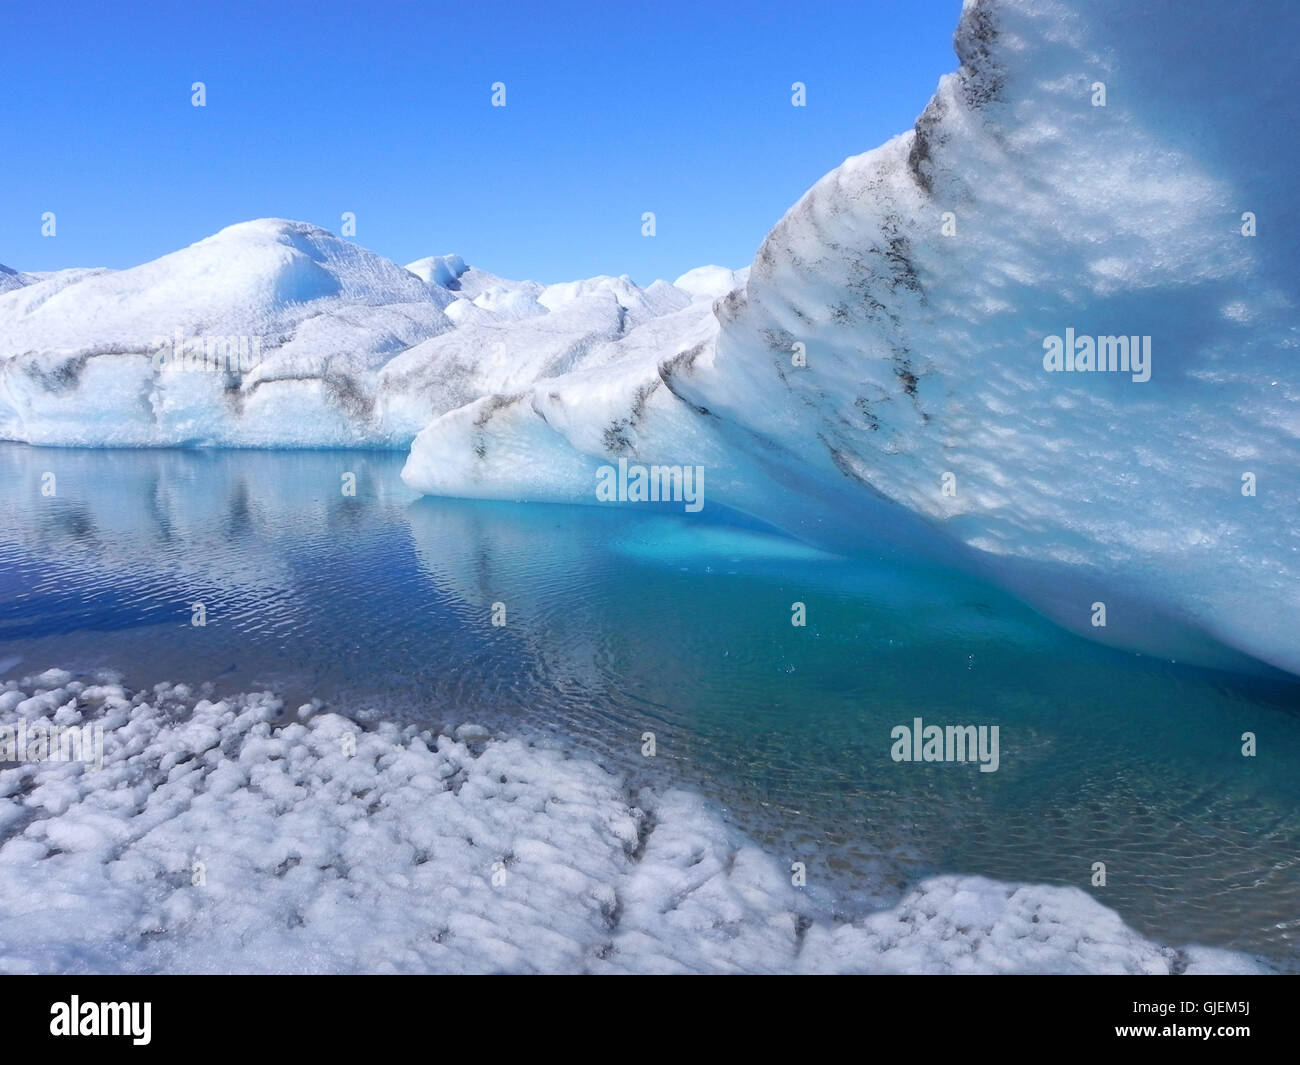 Fonte de la glace au Groenland - grotte de glace avec eau bleue sur la feuille de glace intérieure Banque D'Images